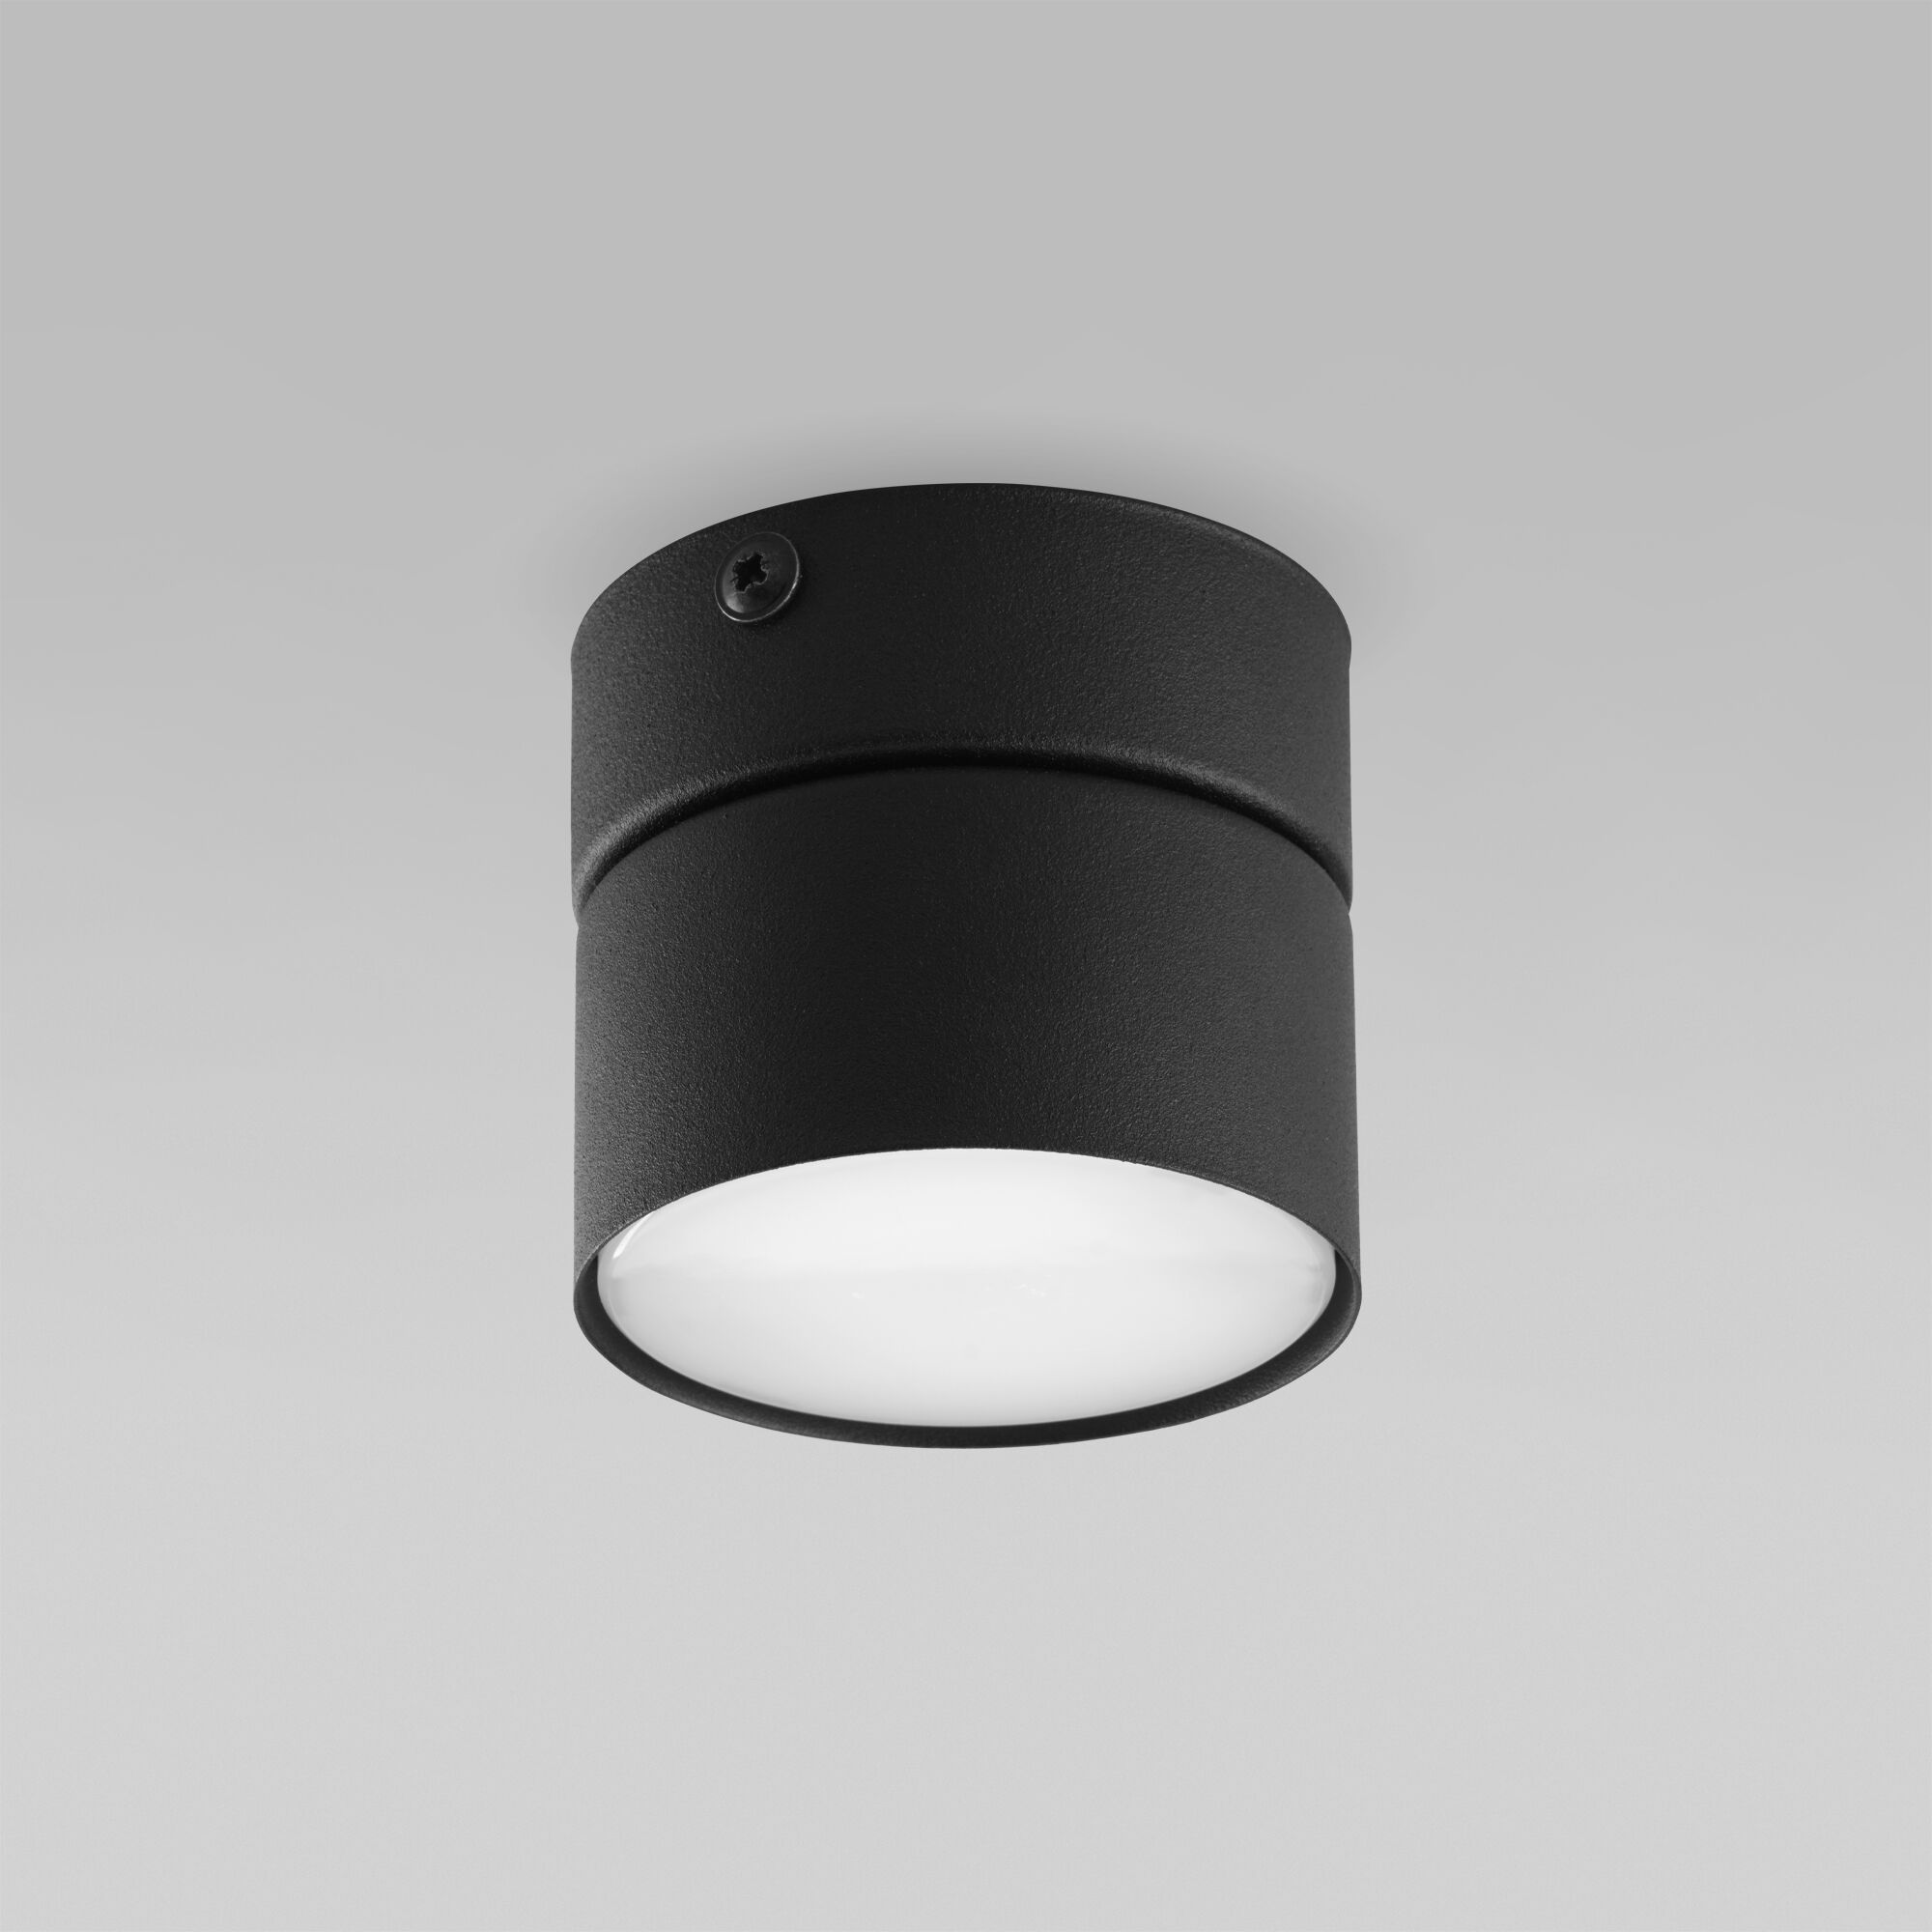 Потолочный светильник в стиле лофт TK Lighting Space 3398 Space Black. Фото 1